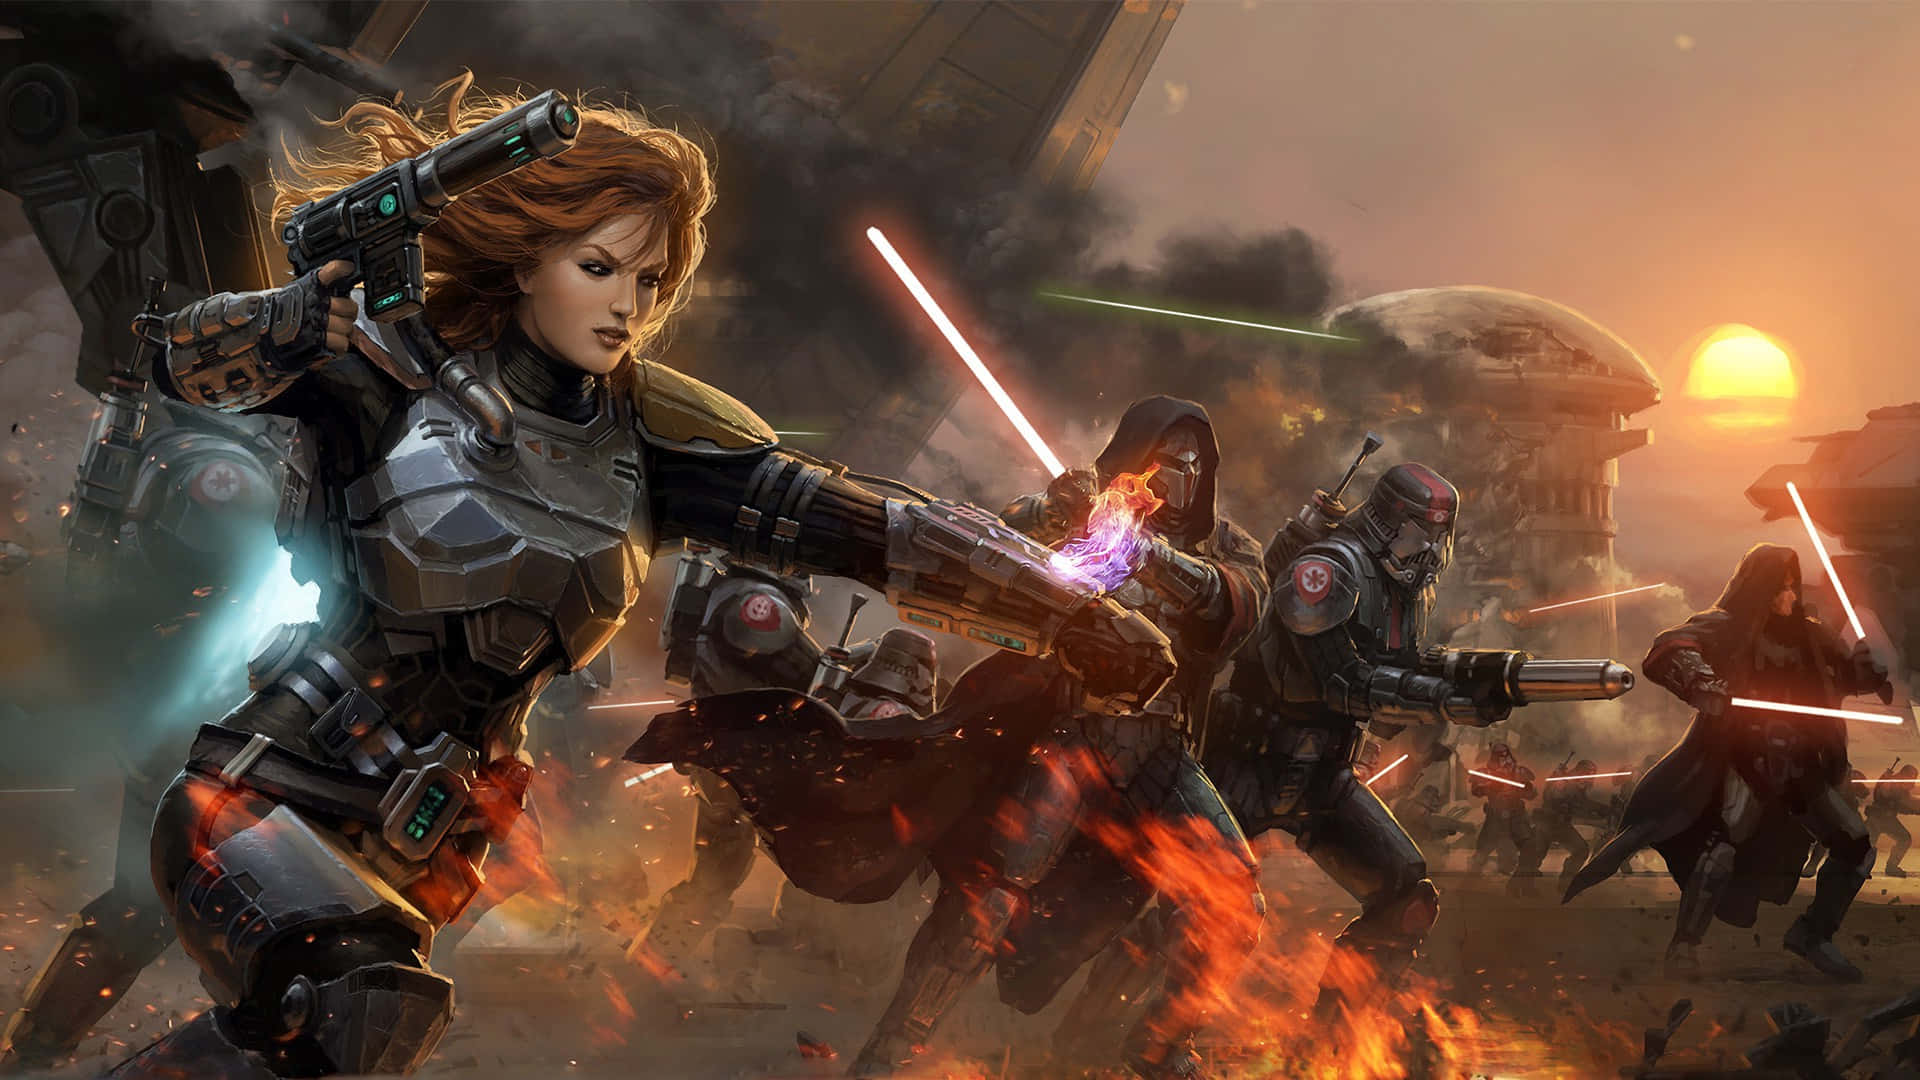 Intense Star Wars Battle Scene in Video Game Wallpaper